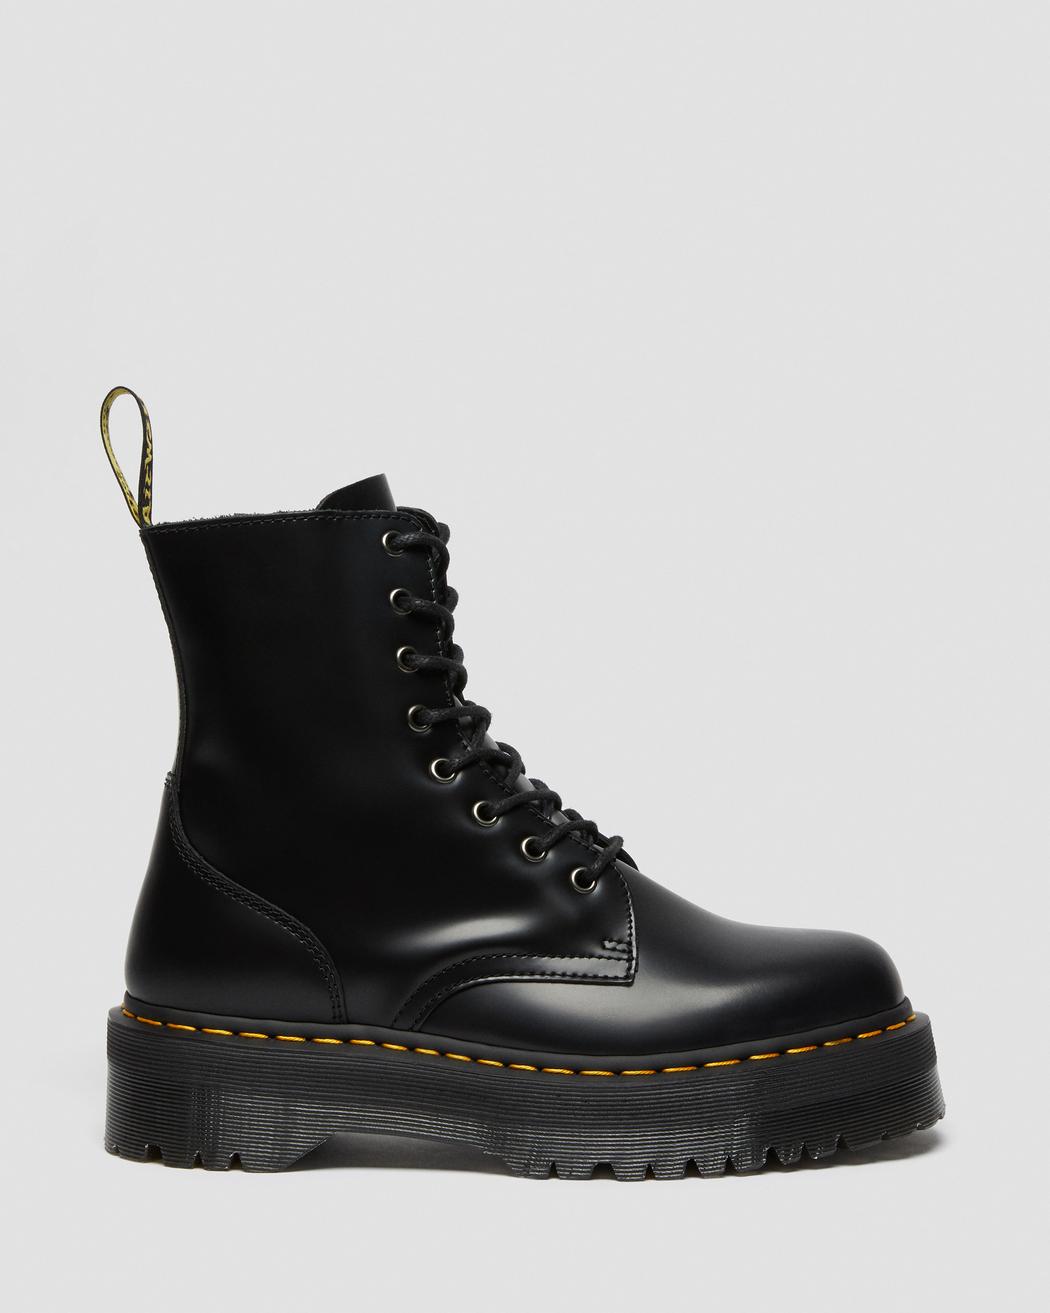 Jadon Black Smooth Leather Platform Boots DM15265001 - 10